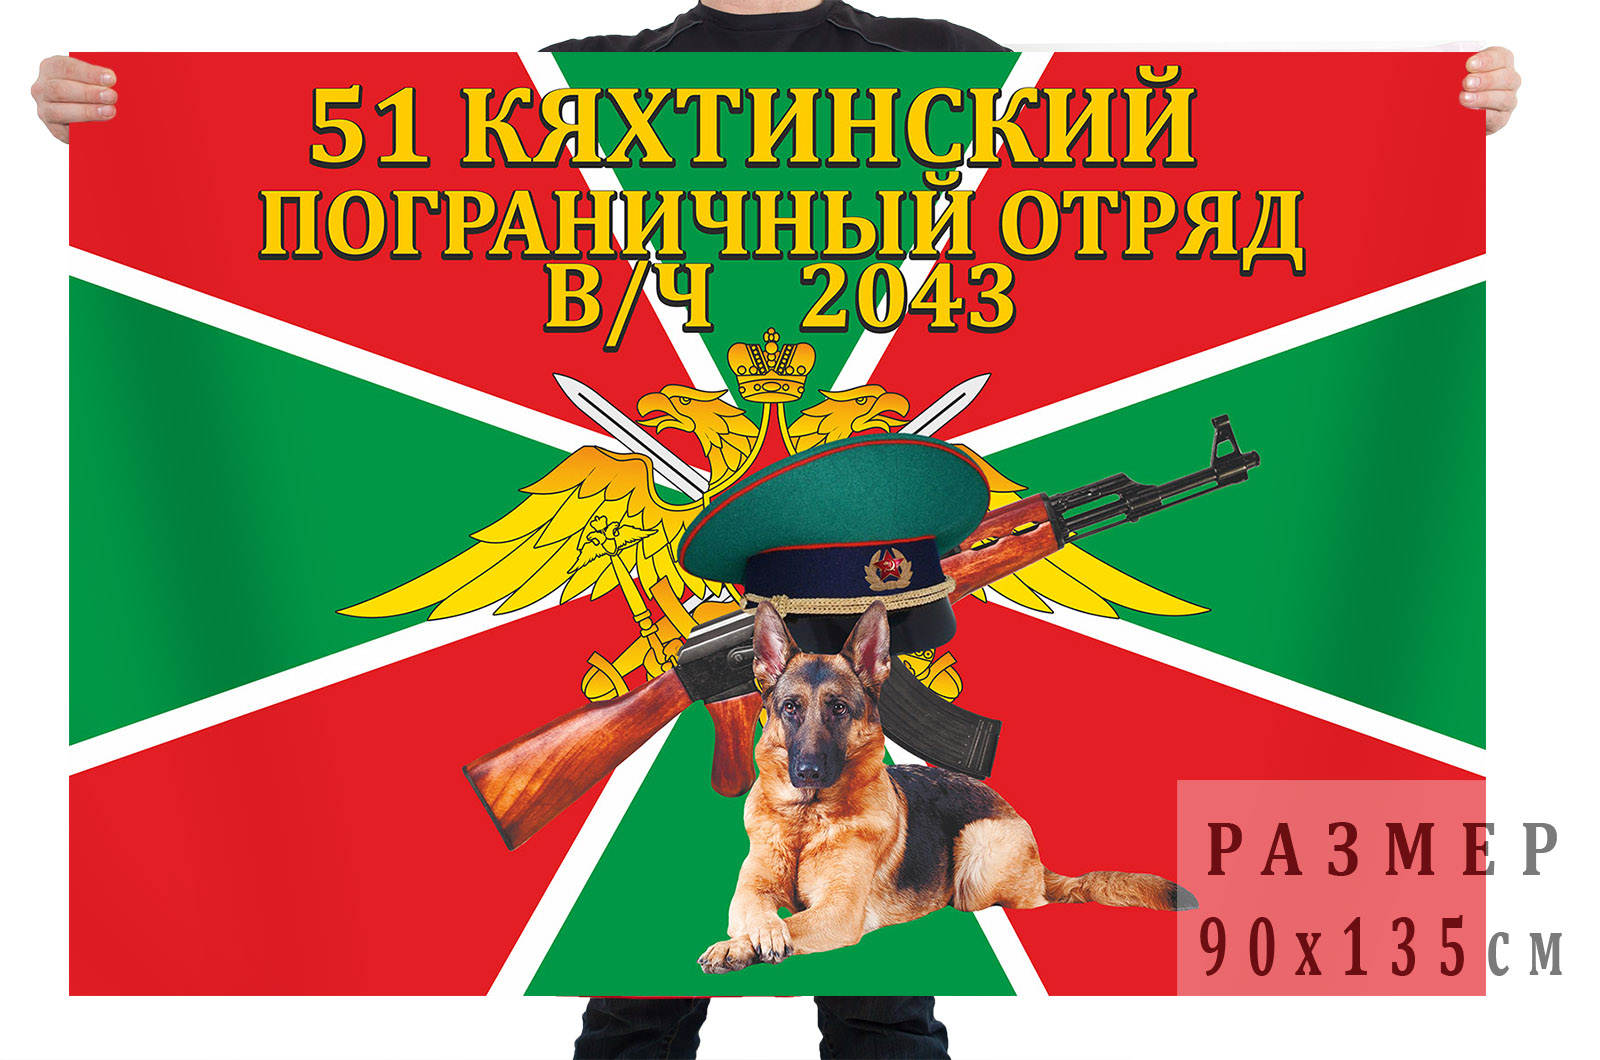 Кяхтинский пограничный отряд 2043 флаг